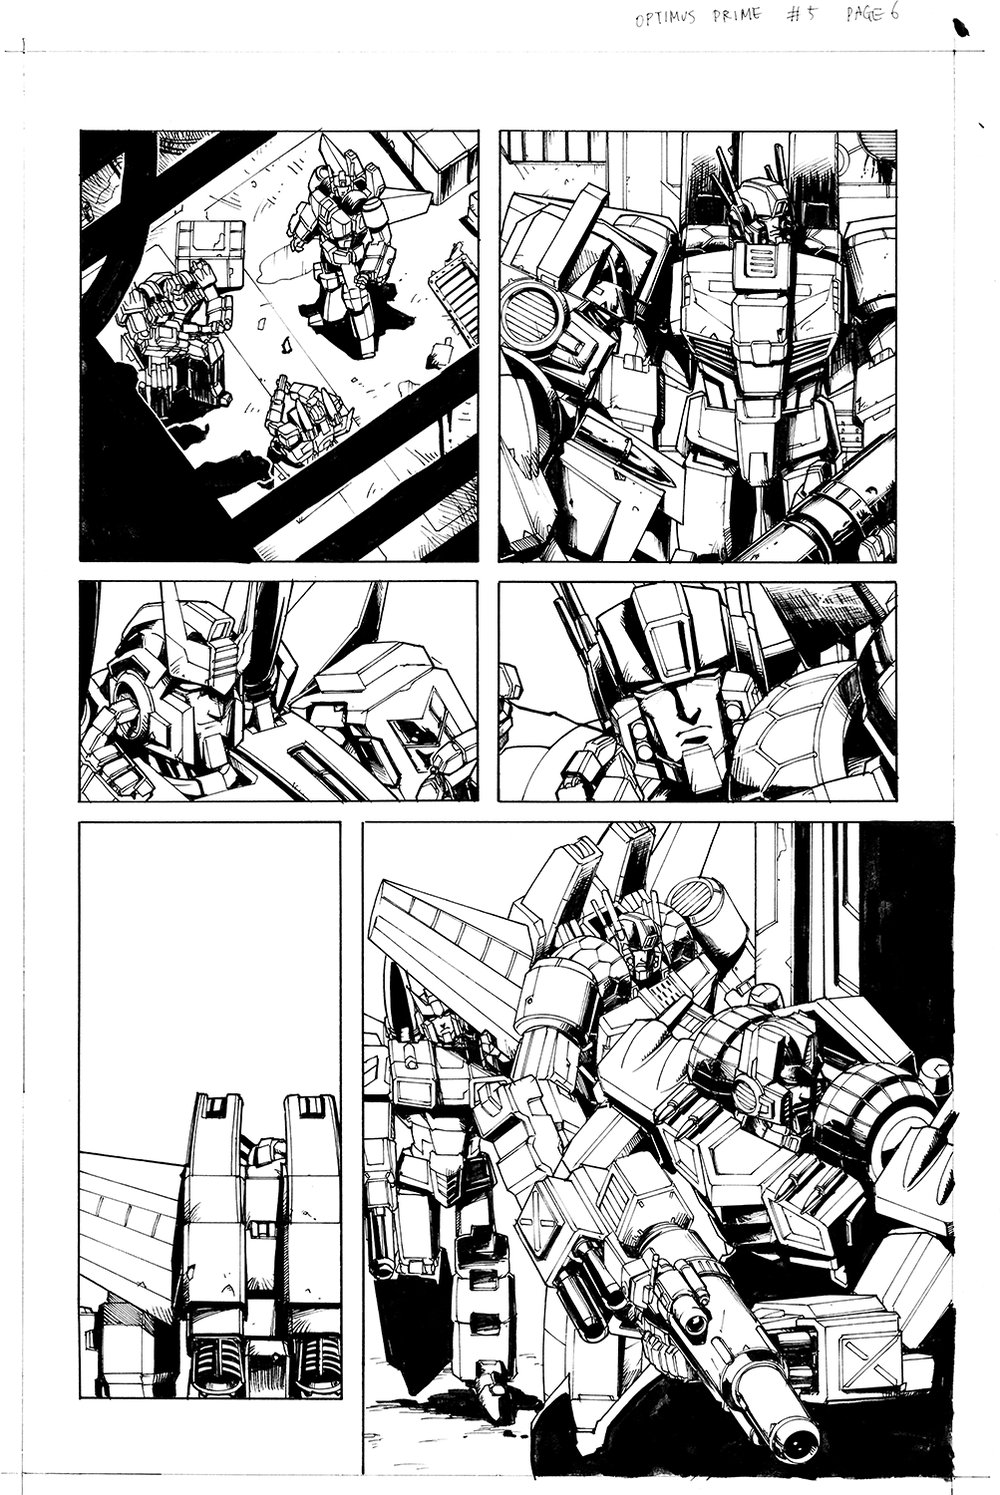 Optimus Prime #5 Page 06